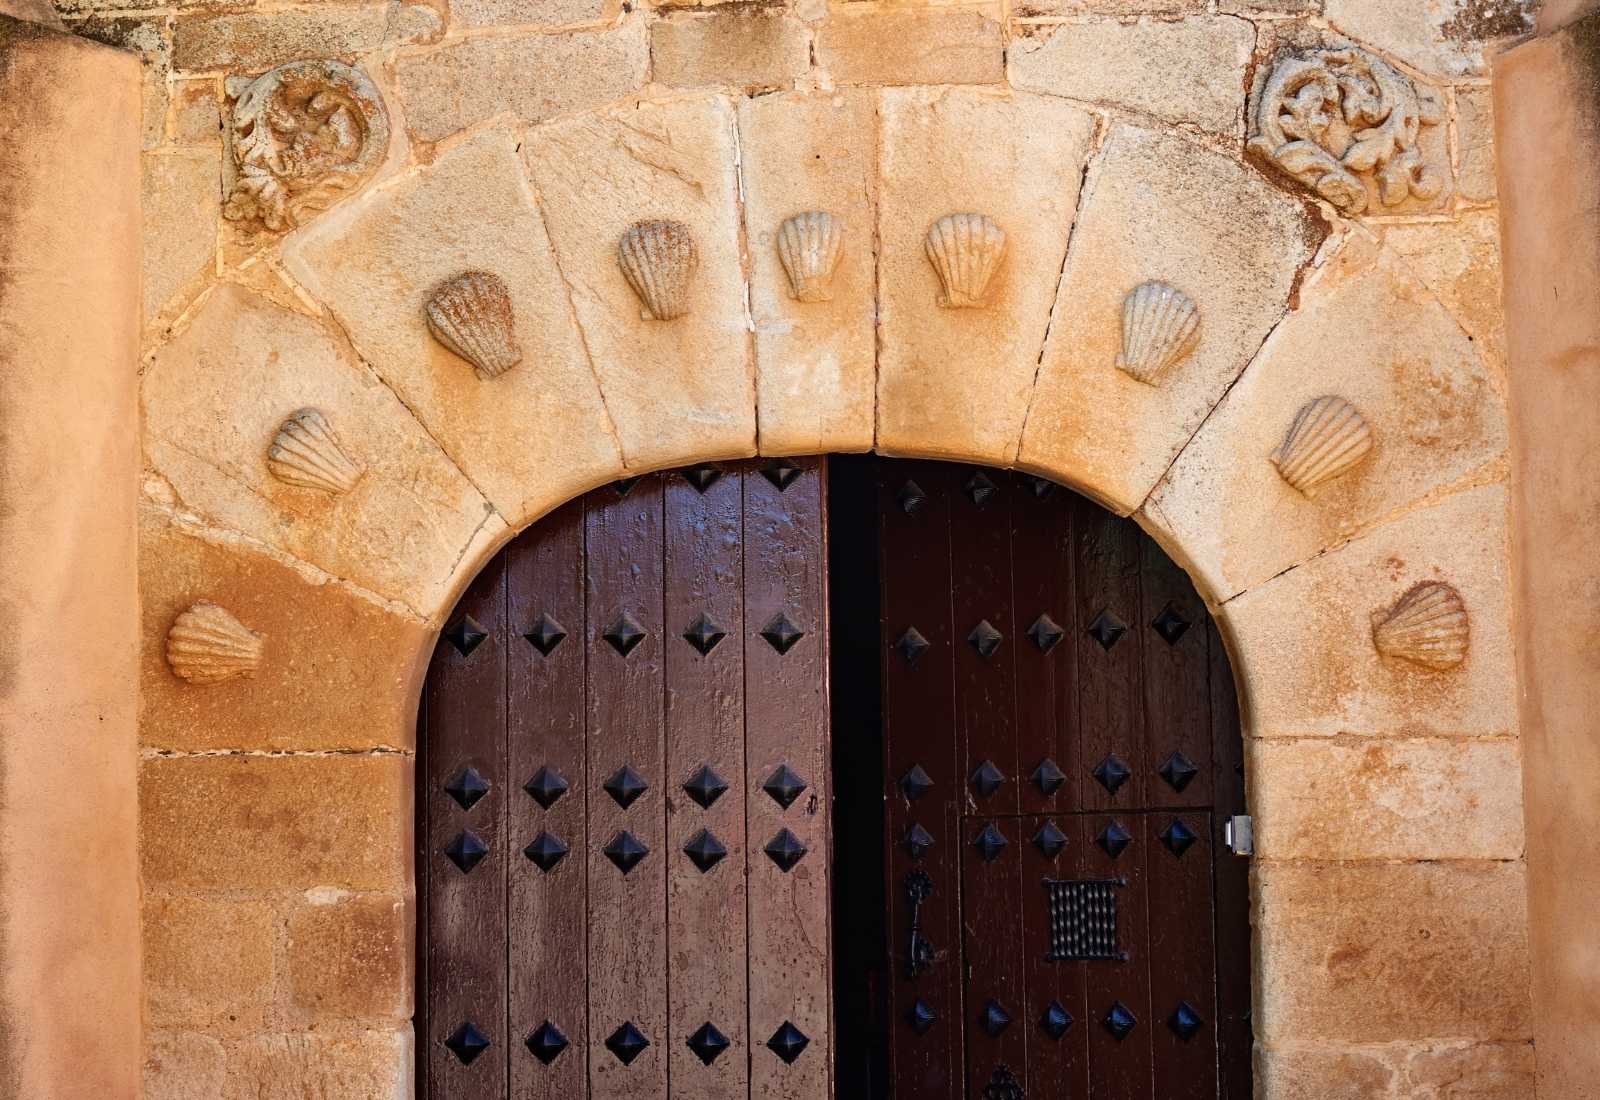 Portón del albergue de Villafranca de Barros